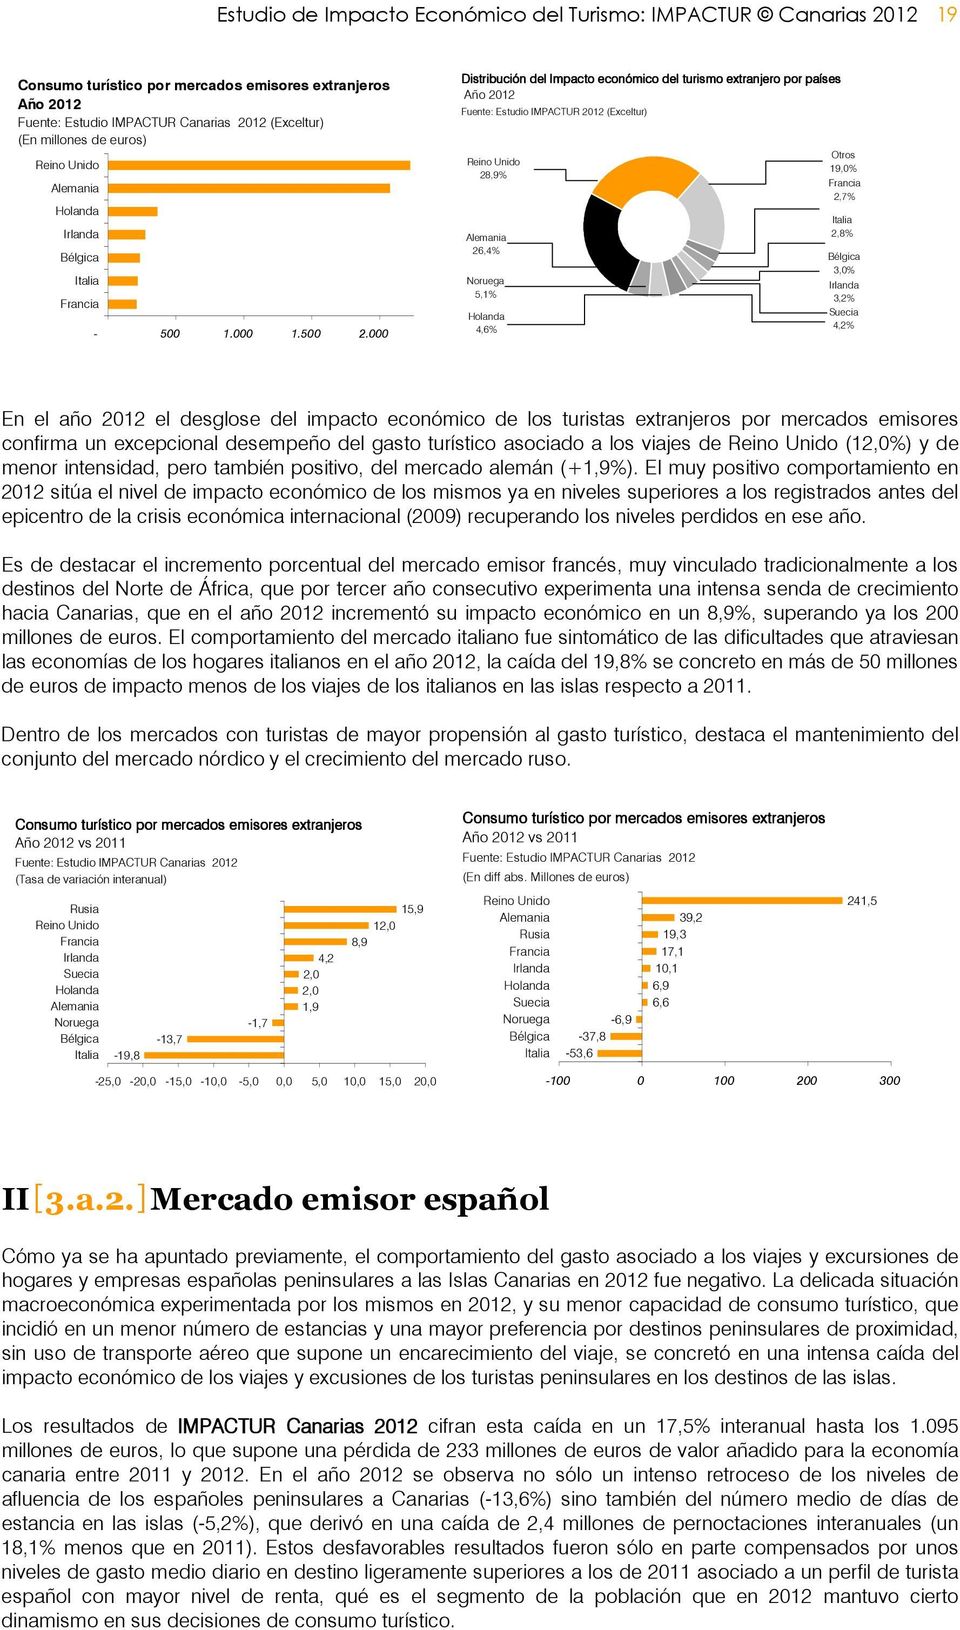 000 Distribución del Impacto económico del turismo extranjero por países Año 2012 Fuente: Estudio IMPACTUR 2012 (Exceltur) Reino Unido 28,9% Alemania 26,4% Noruega 5,1% Holanda 4,6% Otros 19,0%